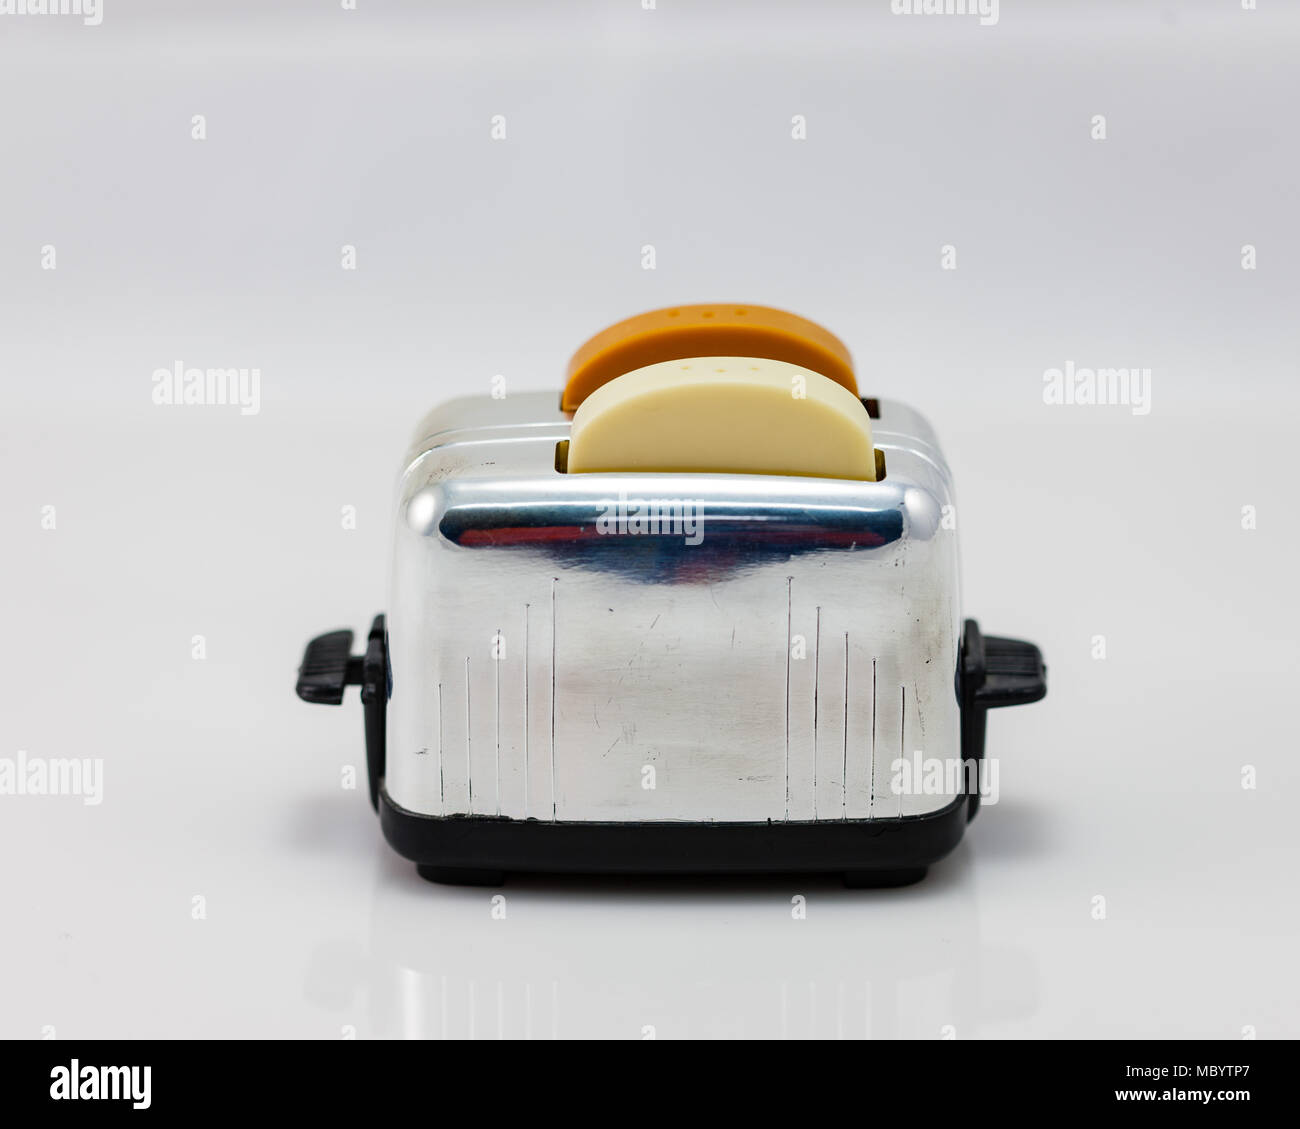 Ein Toaster Salz und peper Shaker mit Brot Stockfoto